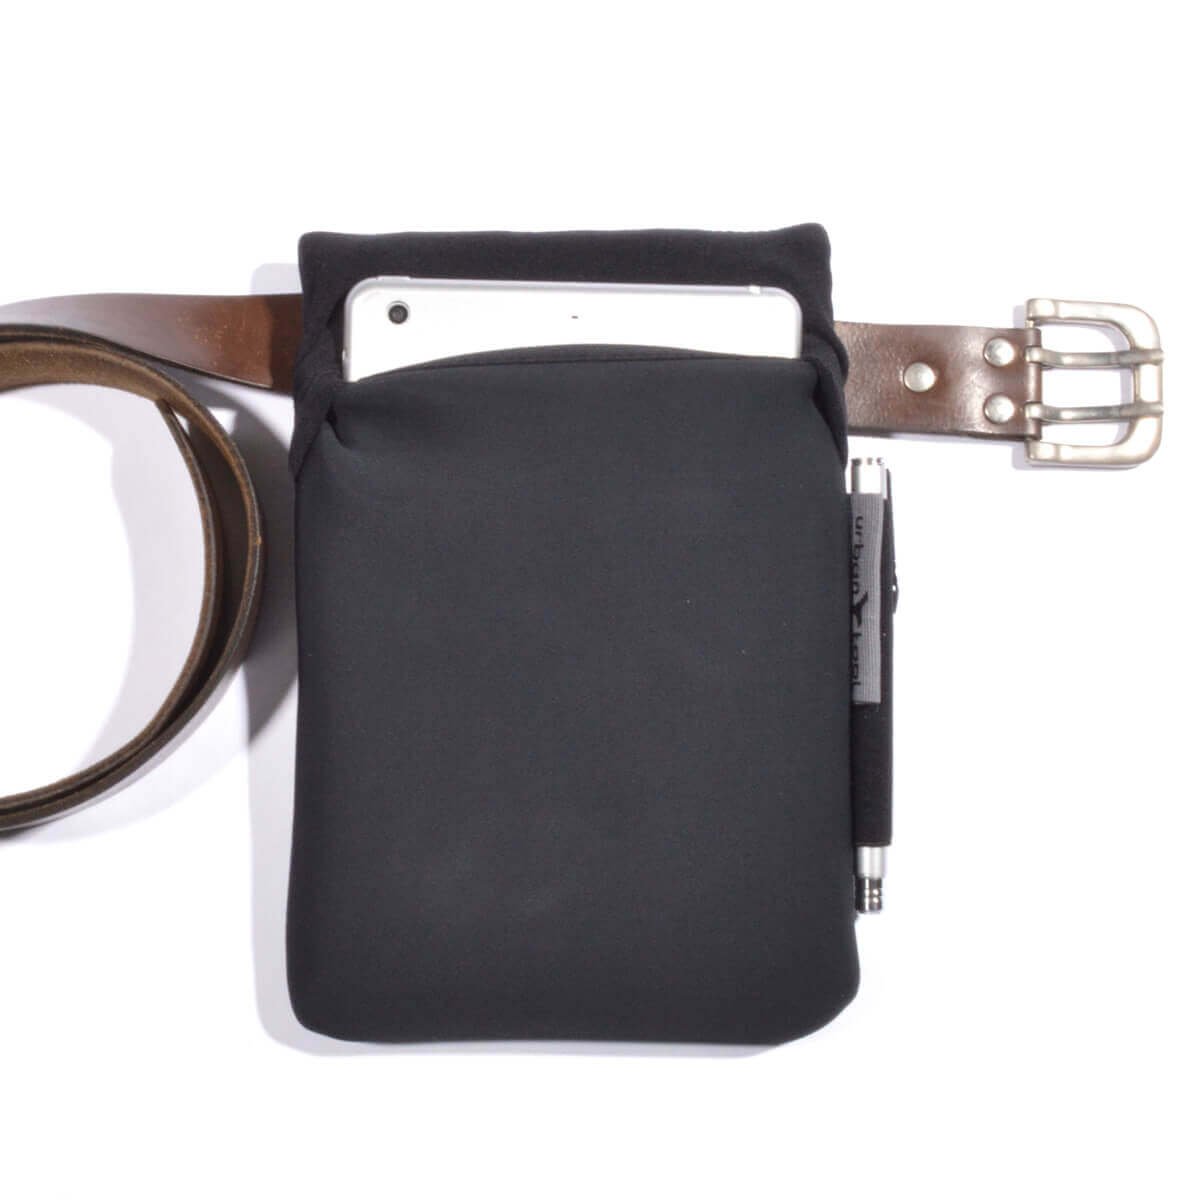 Bag Fanny Pack Leather Waist Shoulder bag for Ebook, Tablet and